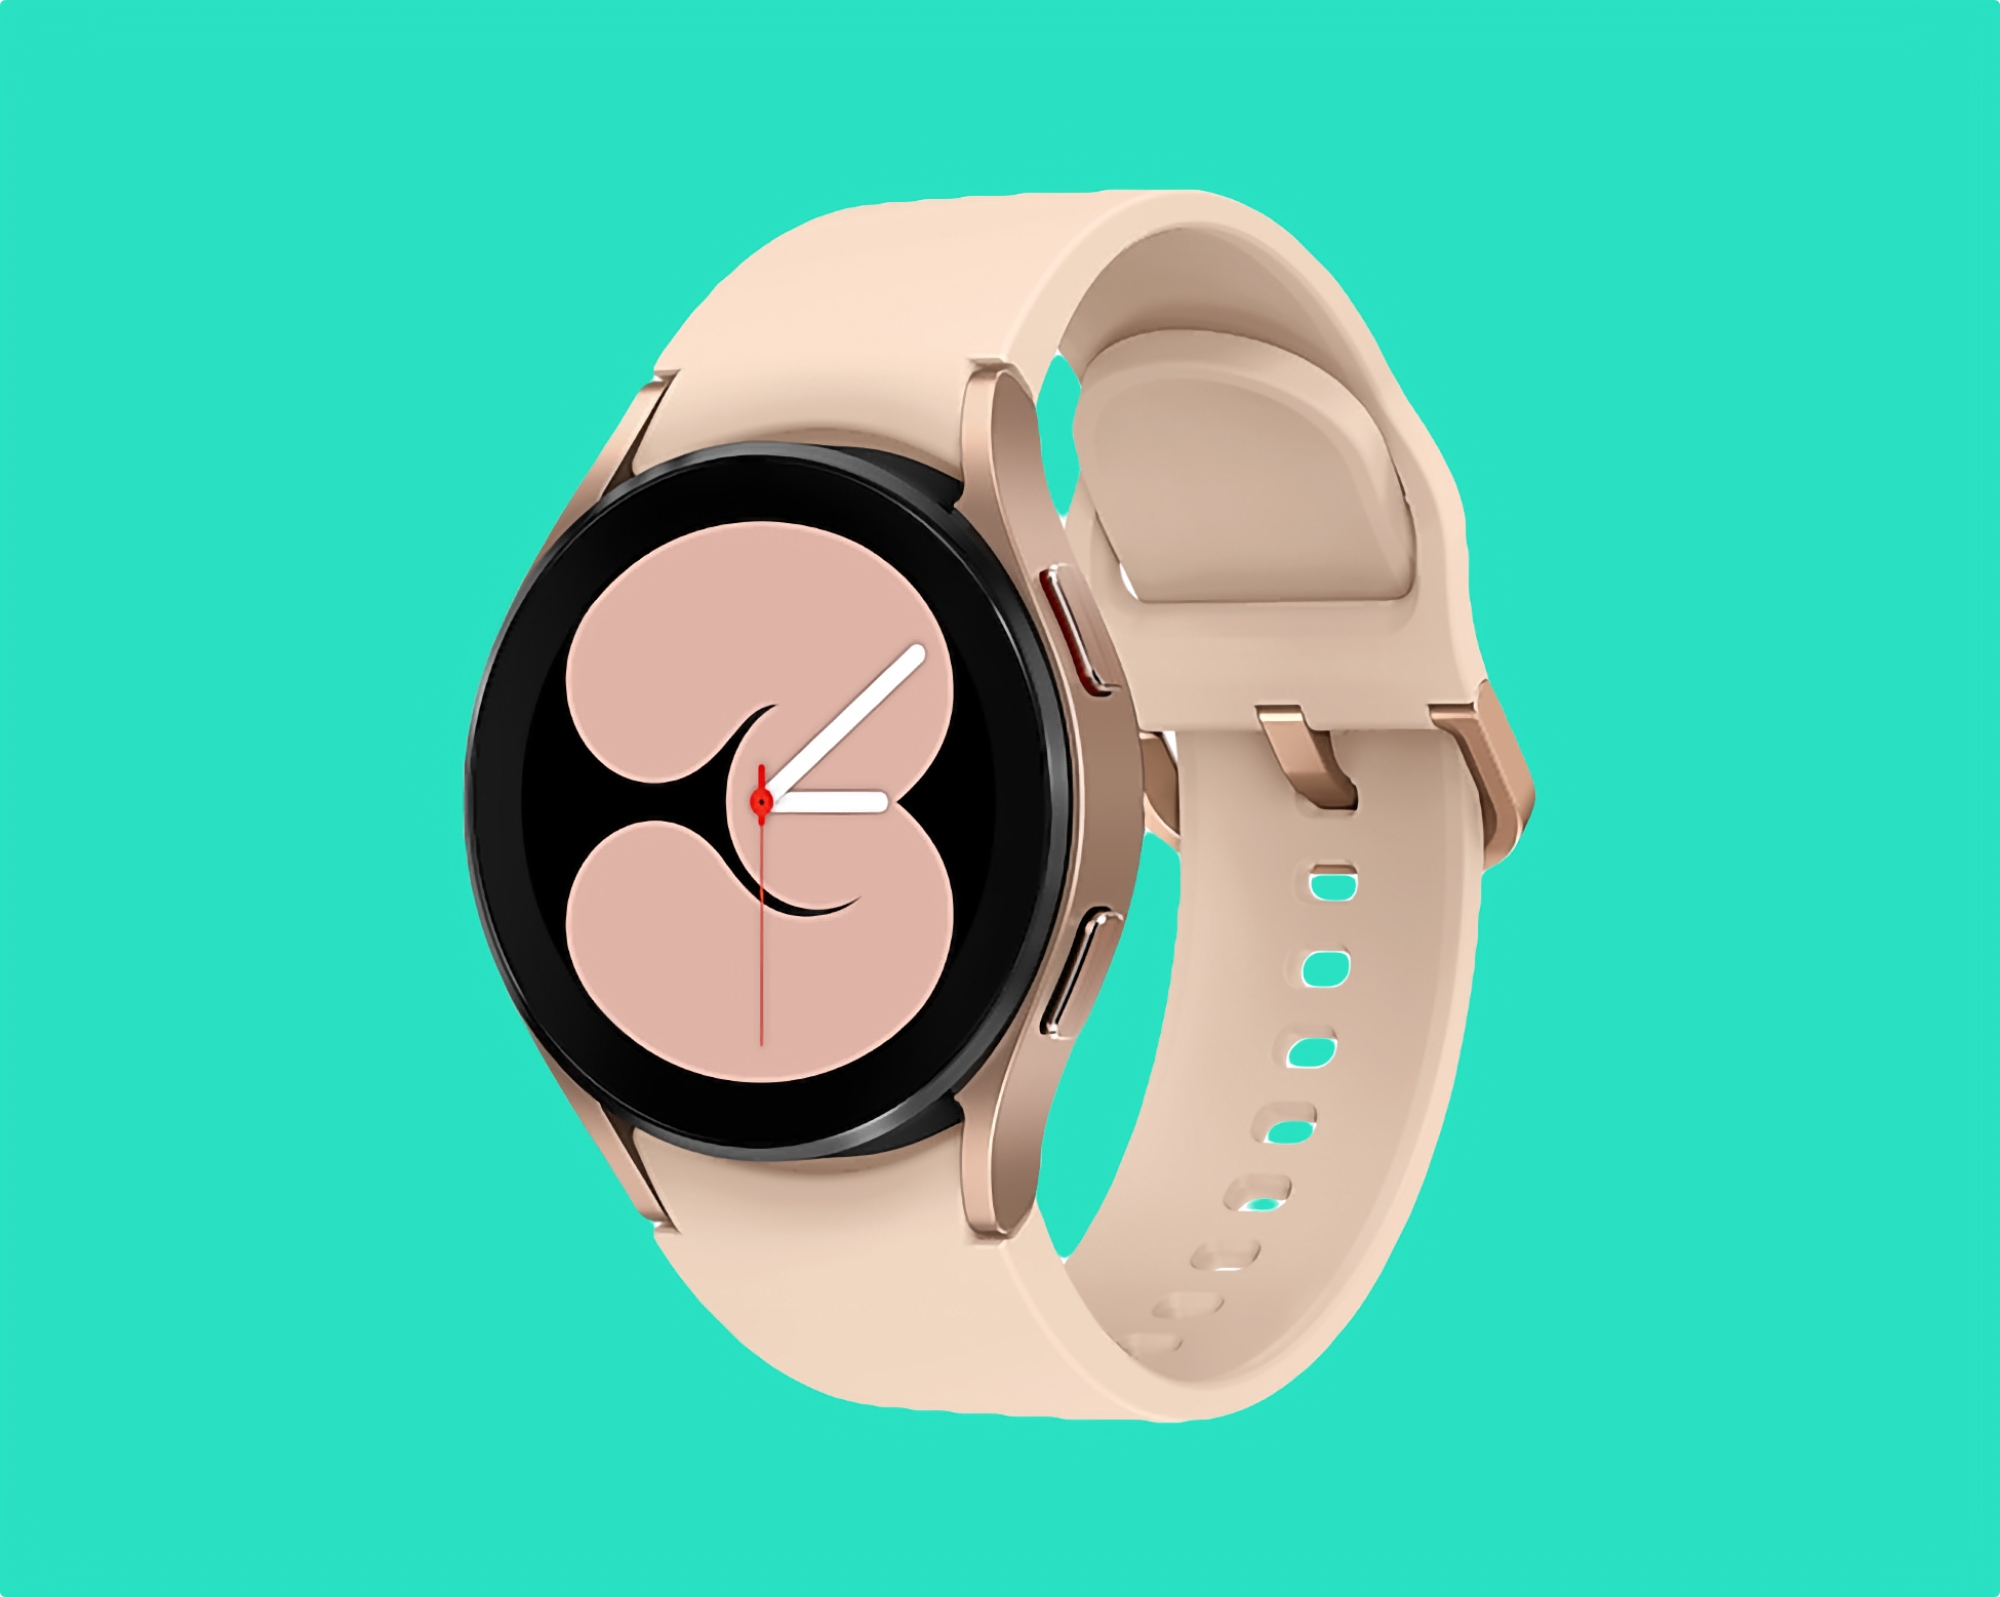 Offerta del giorno: Lo smartwatch Samsung Galaxy Watch4 con sensore ECG, protezione IP68 e Wear OS a bordo è in vendita su Amazon a 169 dollari (110 dollari di sconto)